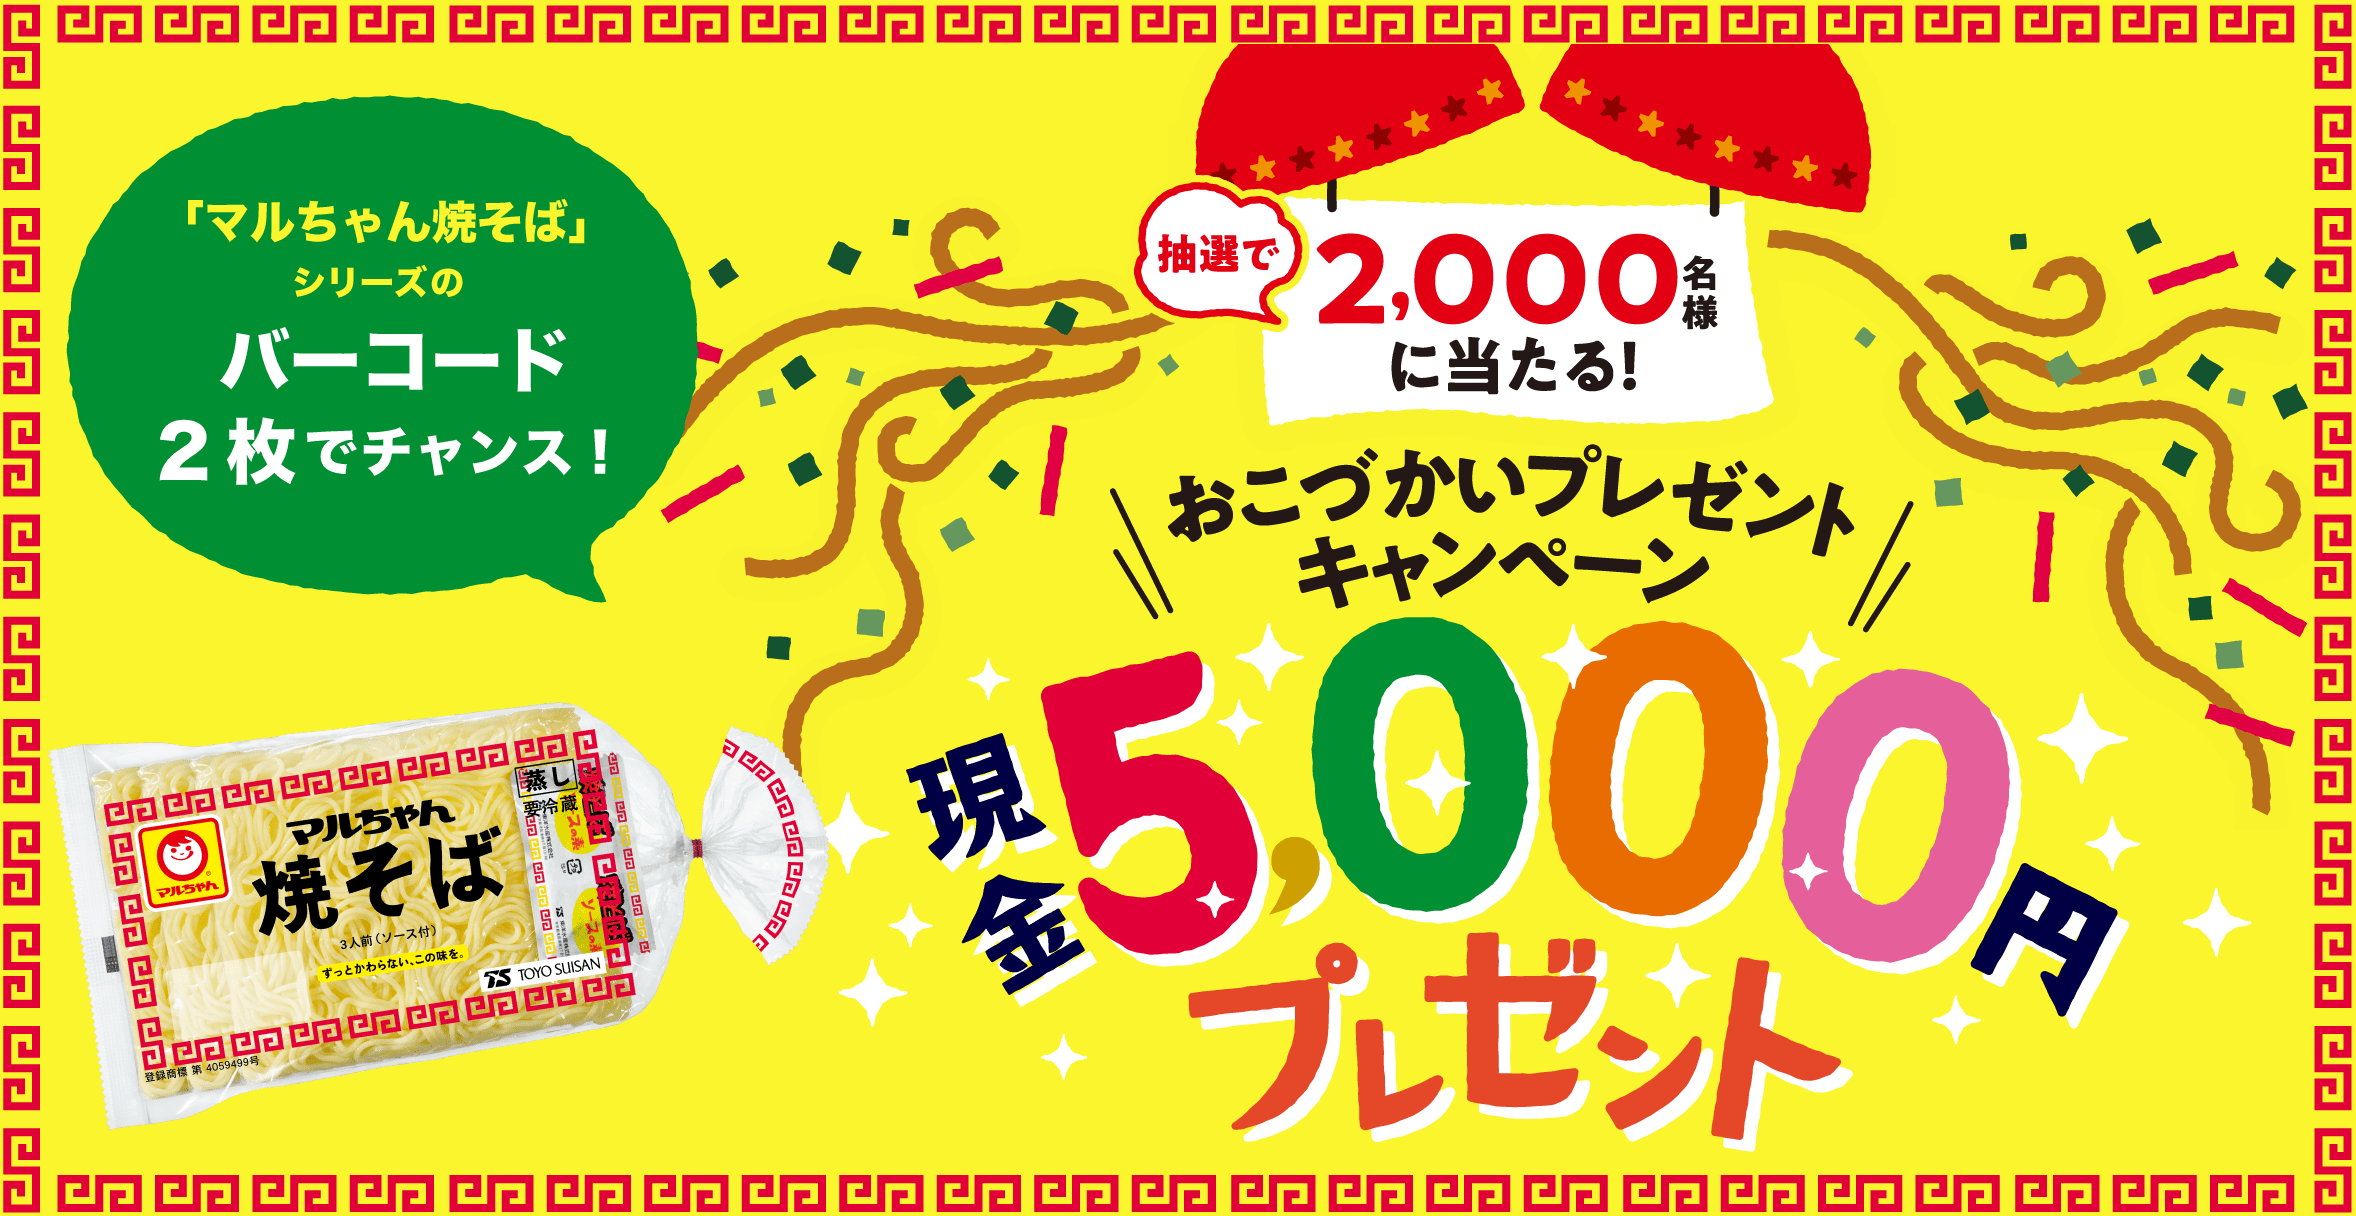 現金5000円プレゼントキャンペーン